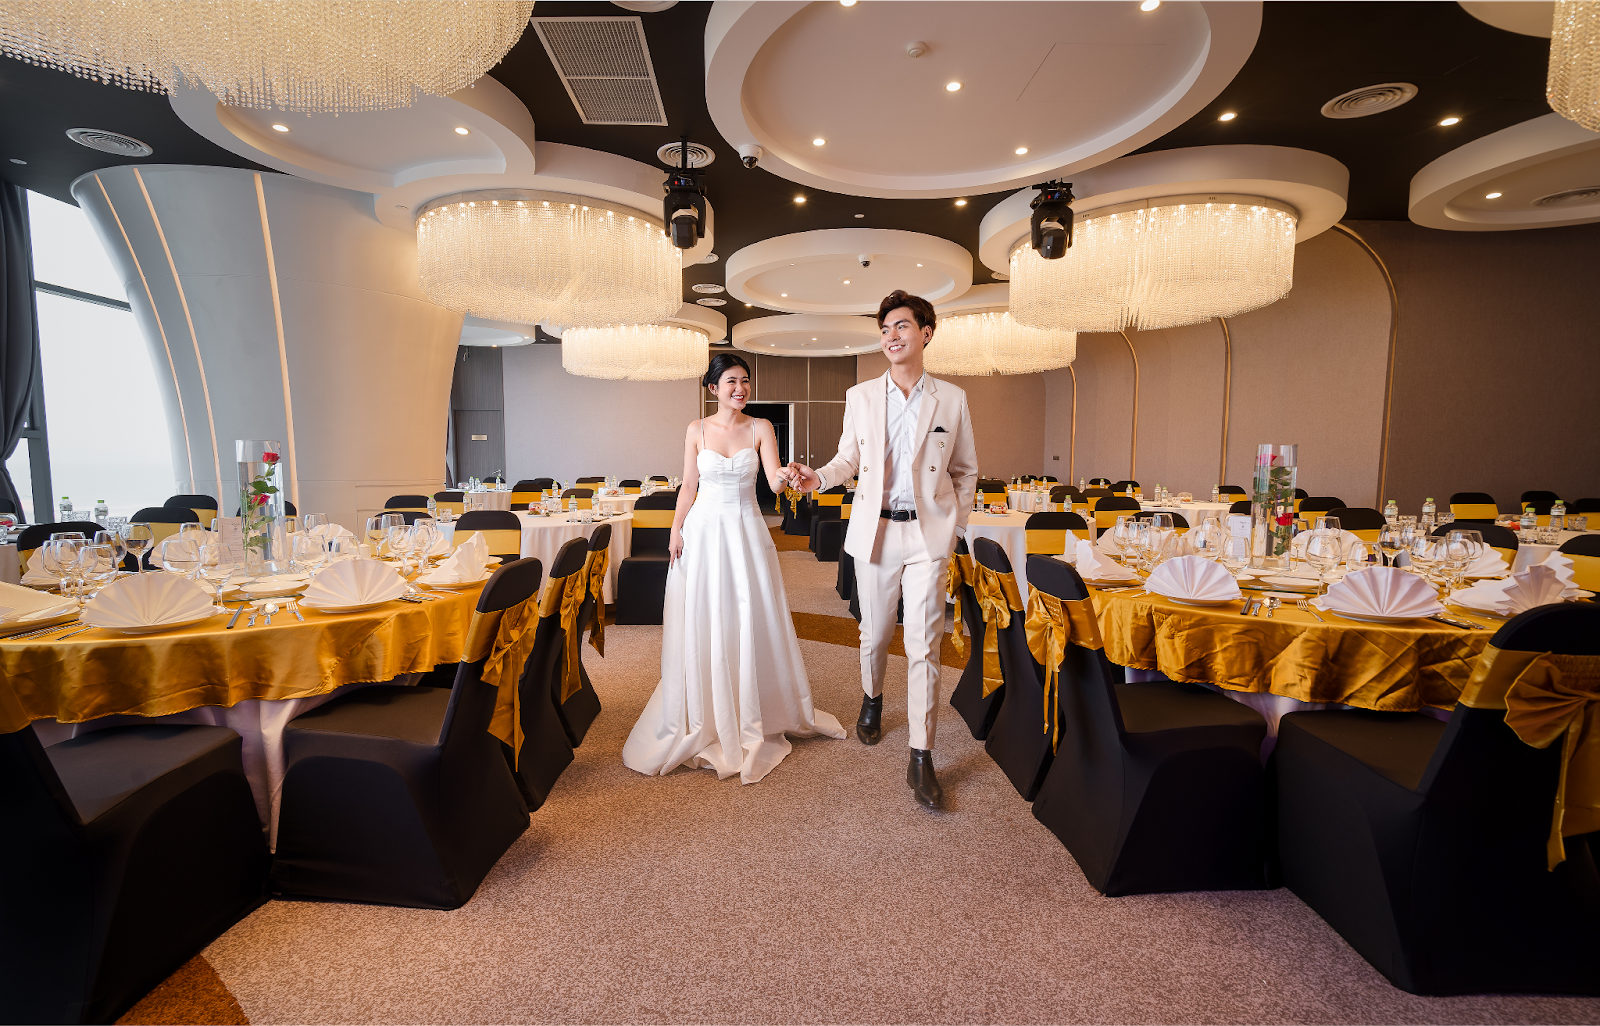 Chi phí tổ chức tiệc cưới tại khách sạn - Không gian sang trọng, đẳng cấp